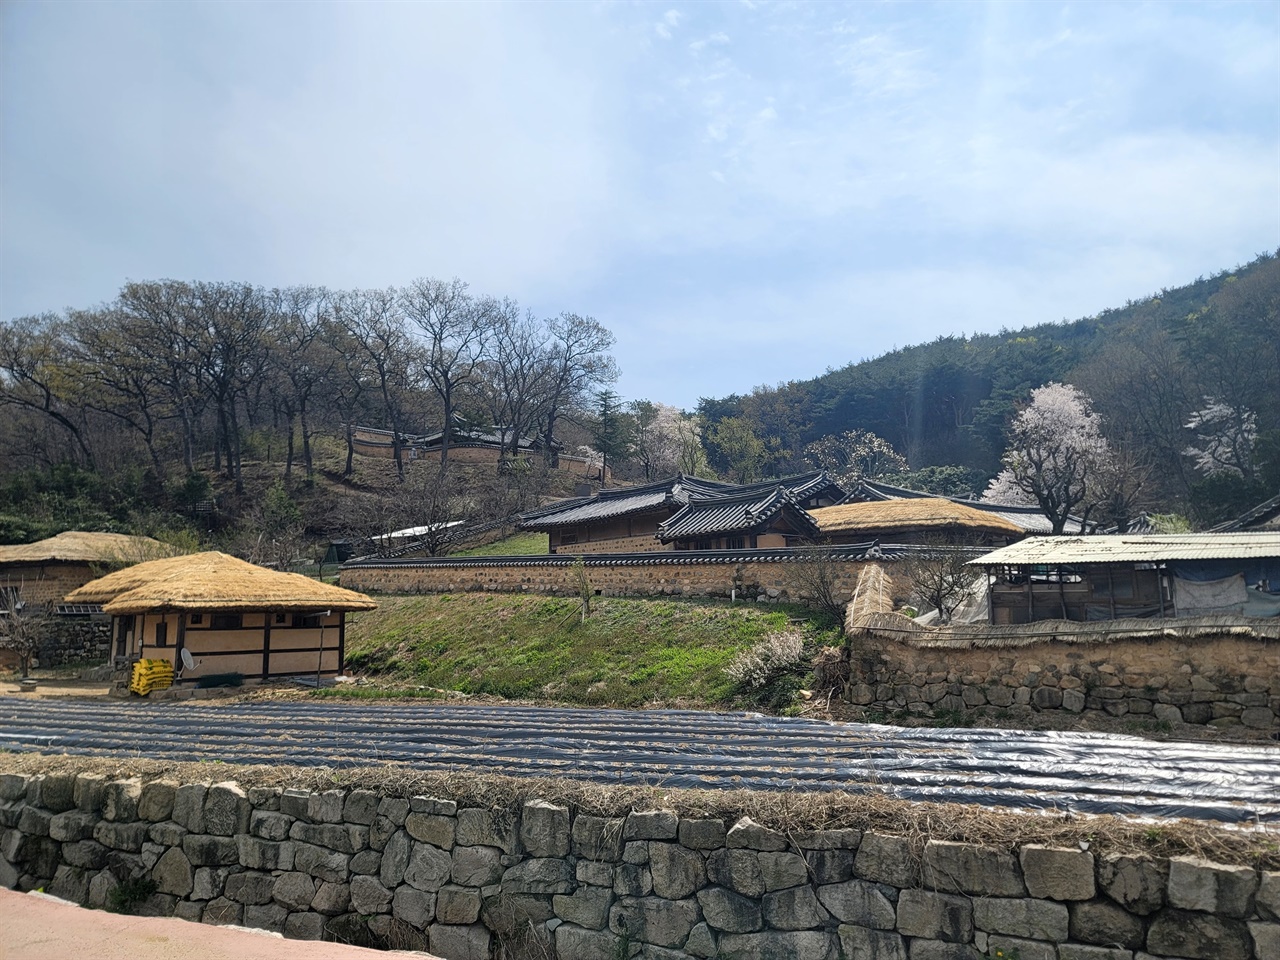 경주시 강동면에 있는 월성 손 씨와 여강 이 씨의 동족 마을. 조선시대의 가옥과 문화, 생활을 간직한 곳으로 중요한 가치를 지닌 마을